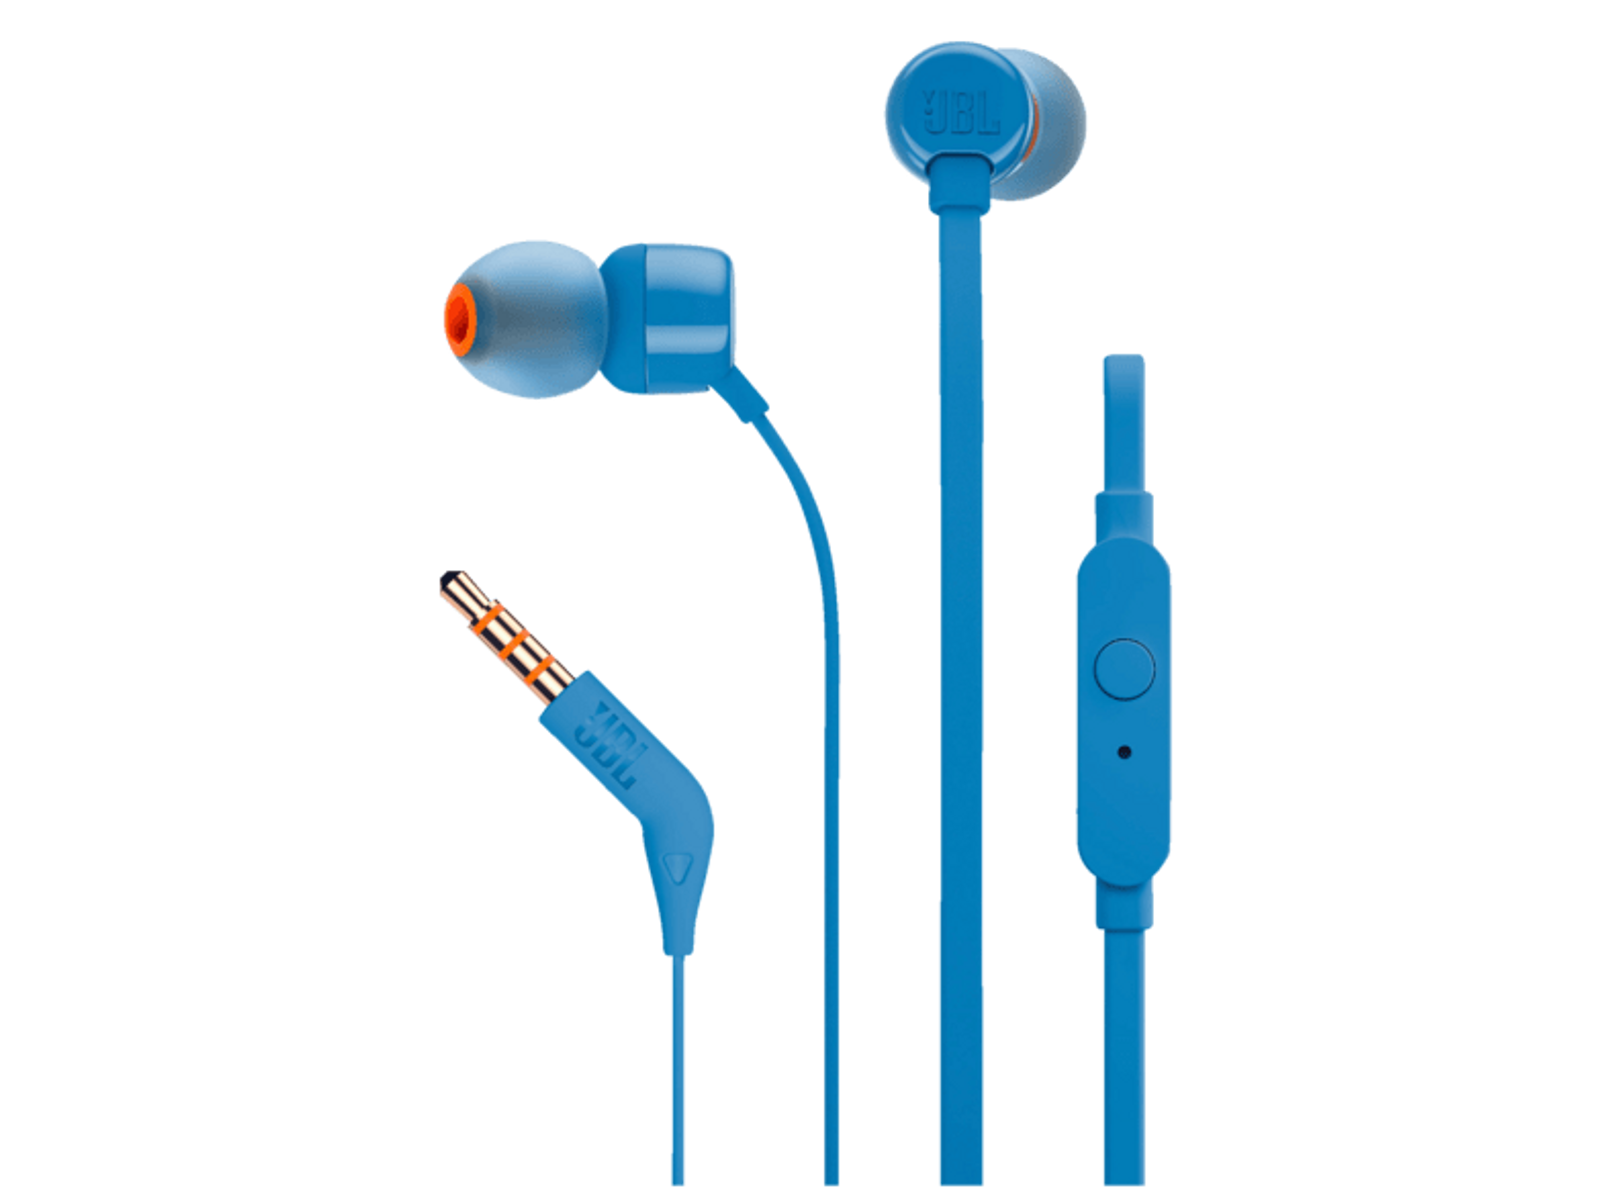 Blau BLU, In-ear 110 T JBL Kopfhörer